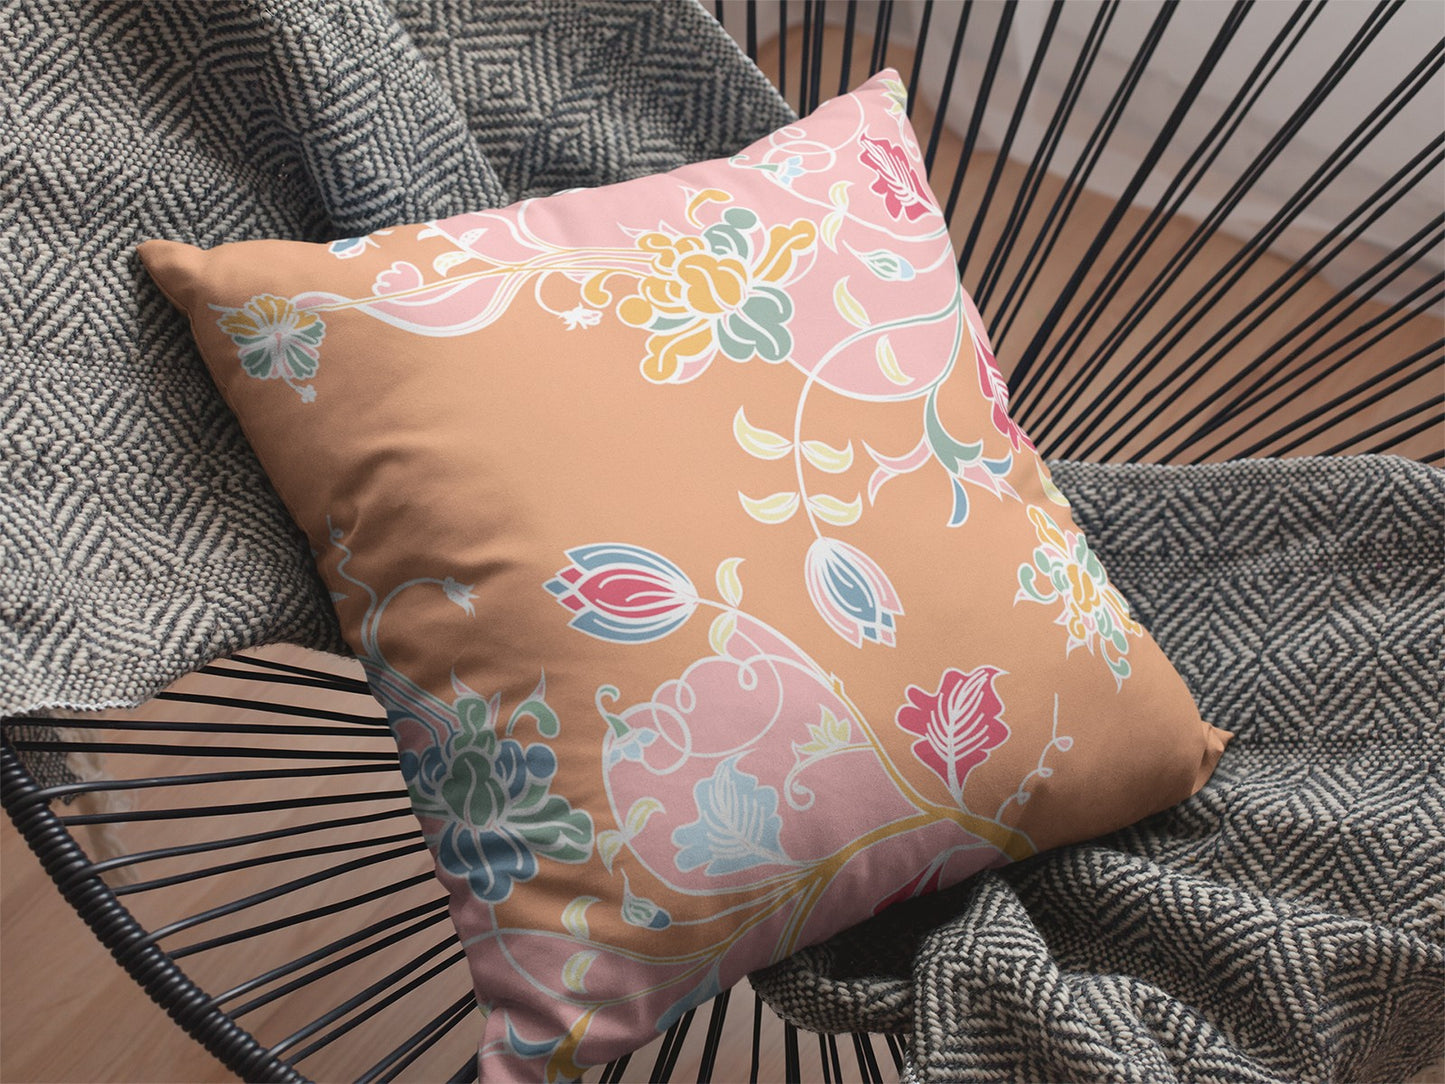 16" Pink Orange Garden Decorative Suede Throw Pillow